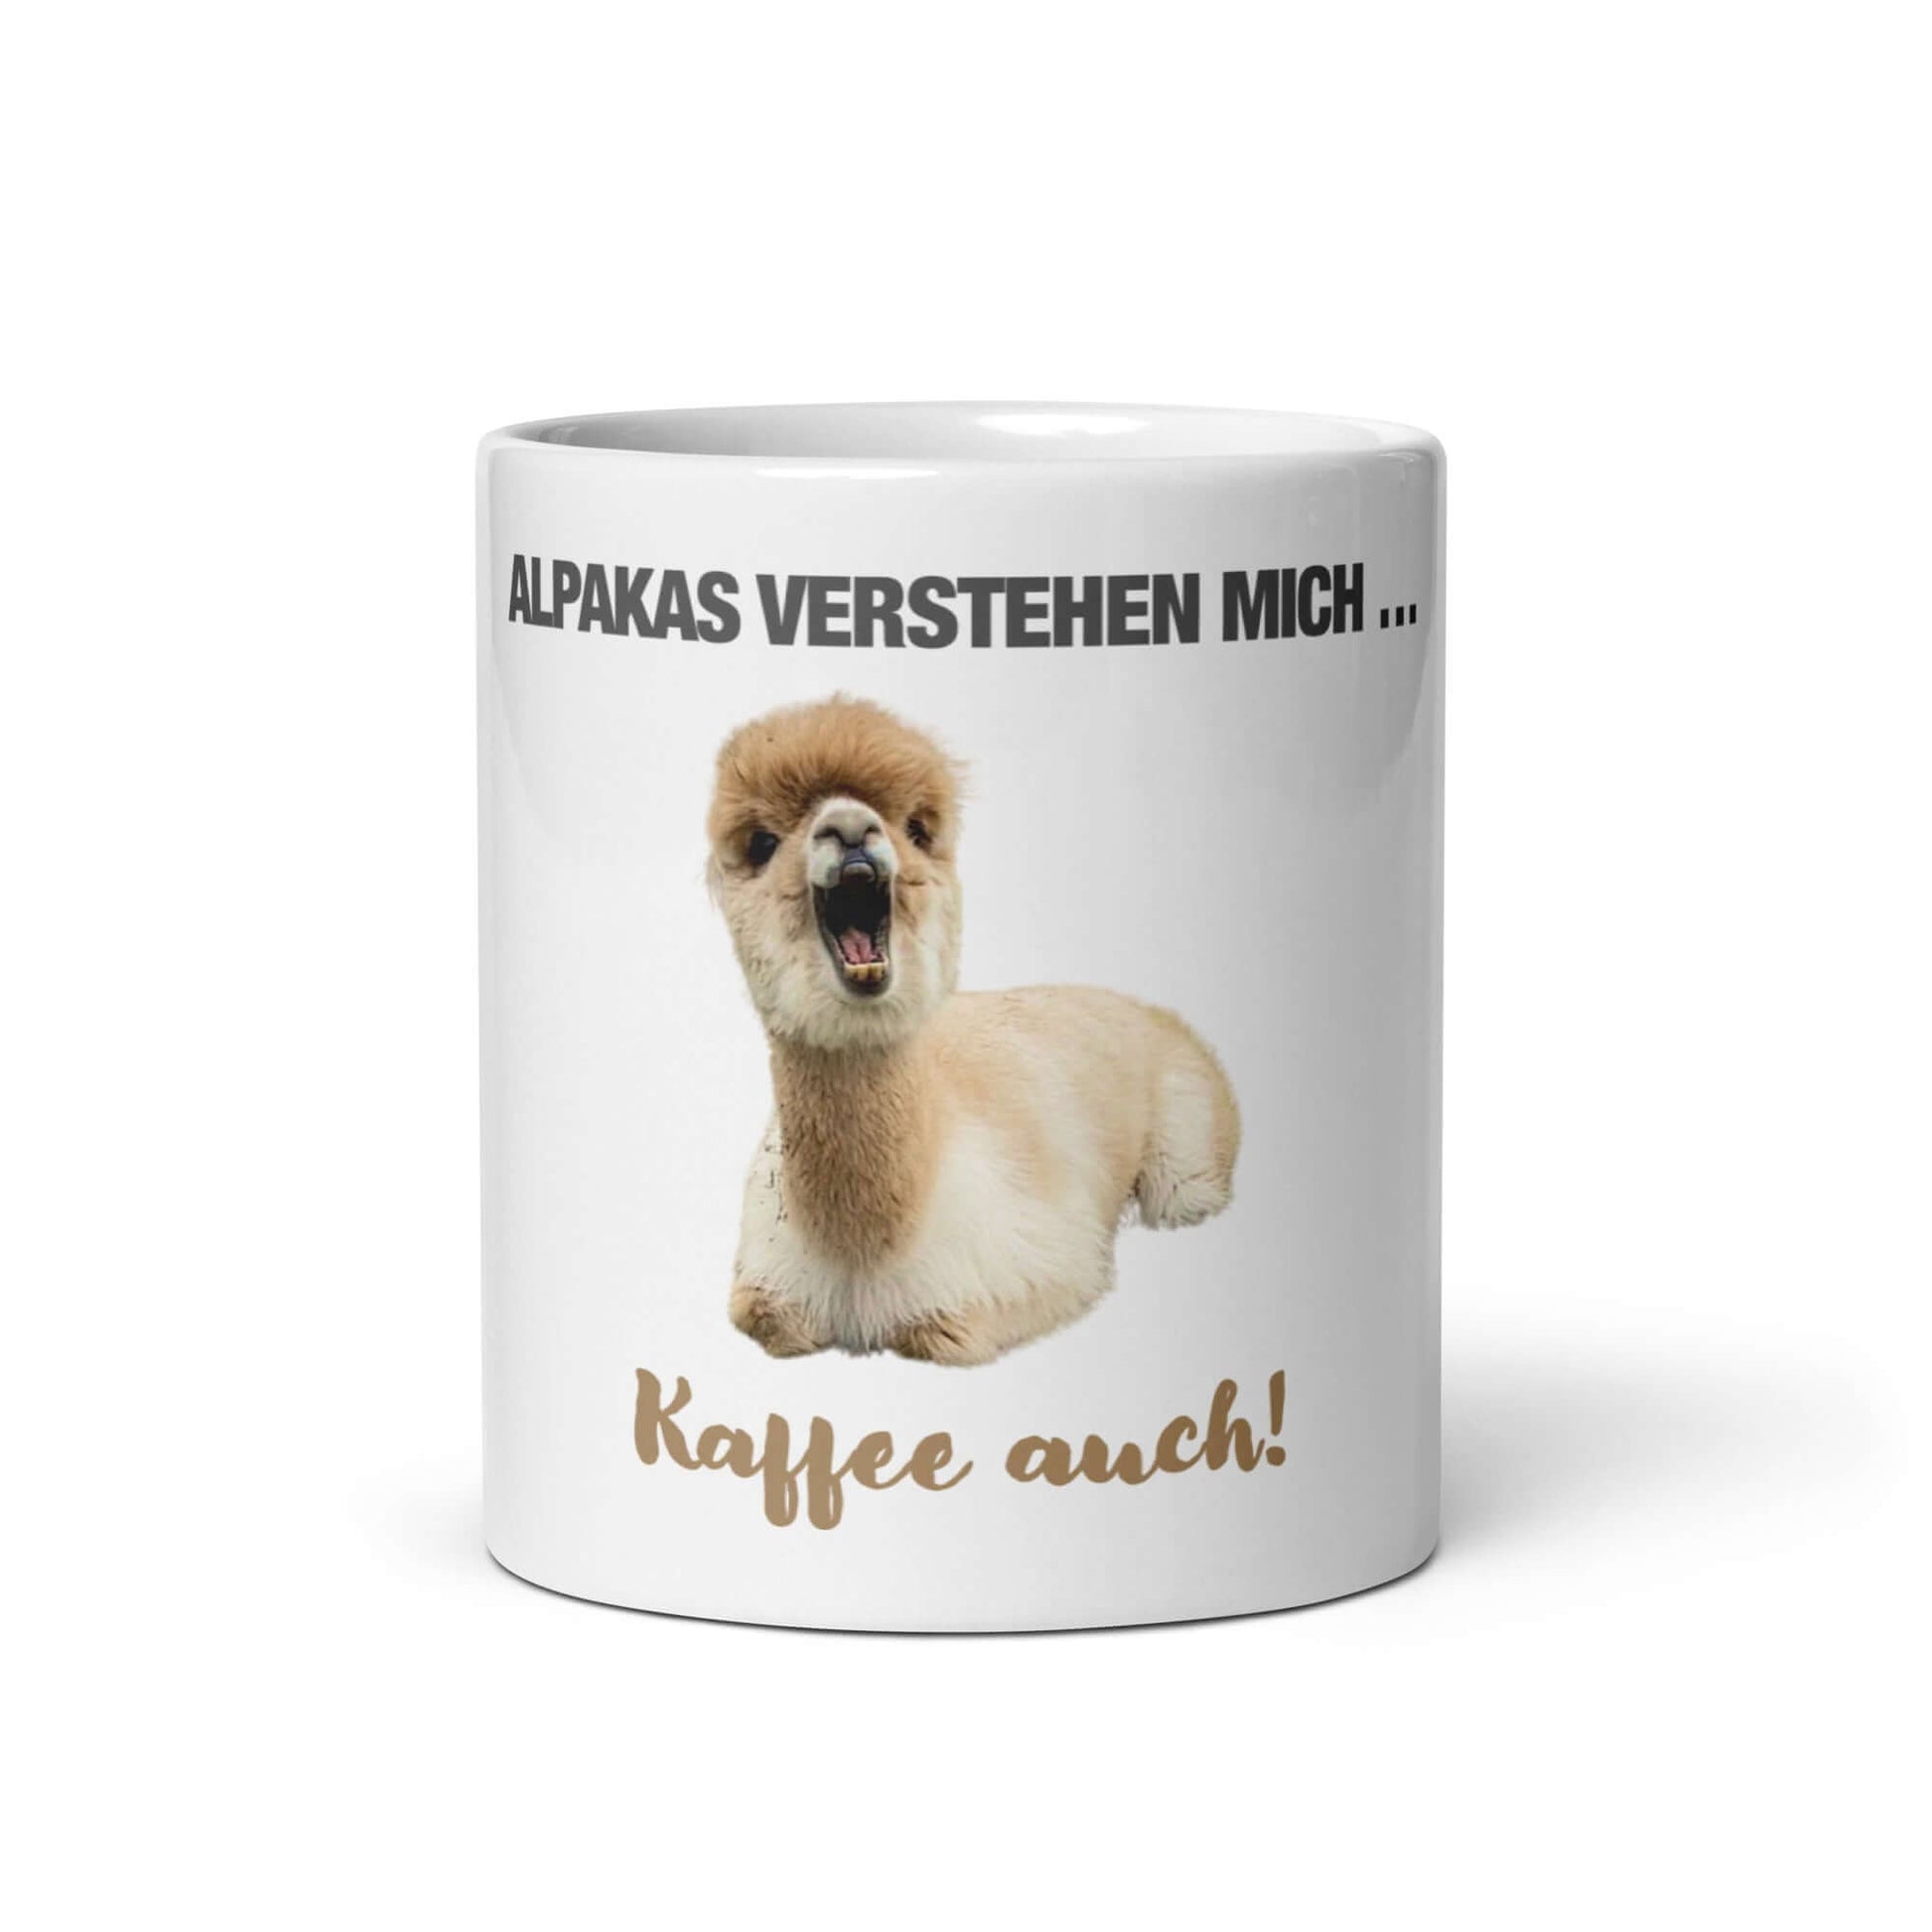 Alpaka Tasse mit lustigem Tiermotiv: Ideale Alpaka Geschenkidee für Kaffeeliebhaber und Tierfans!